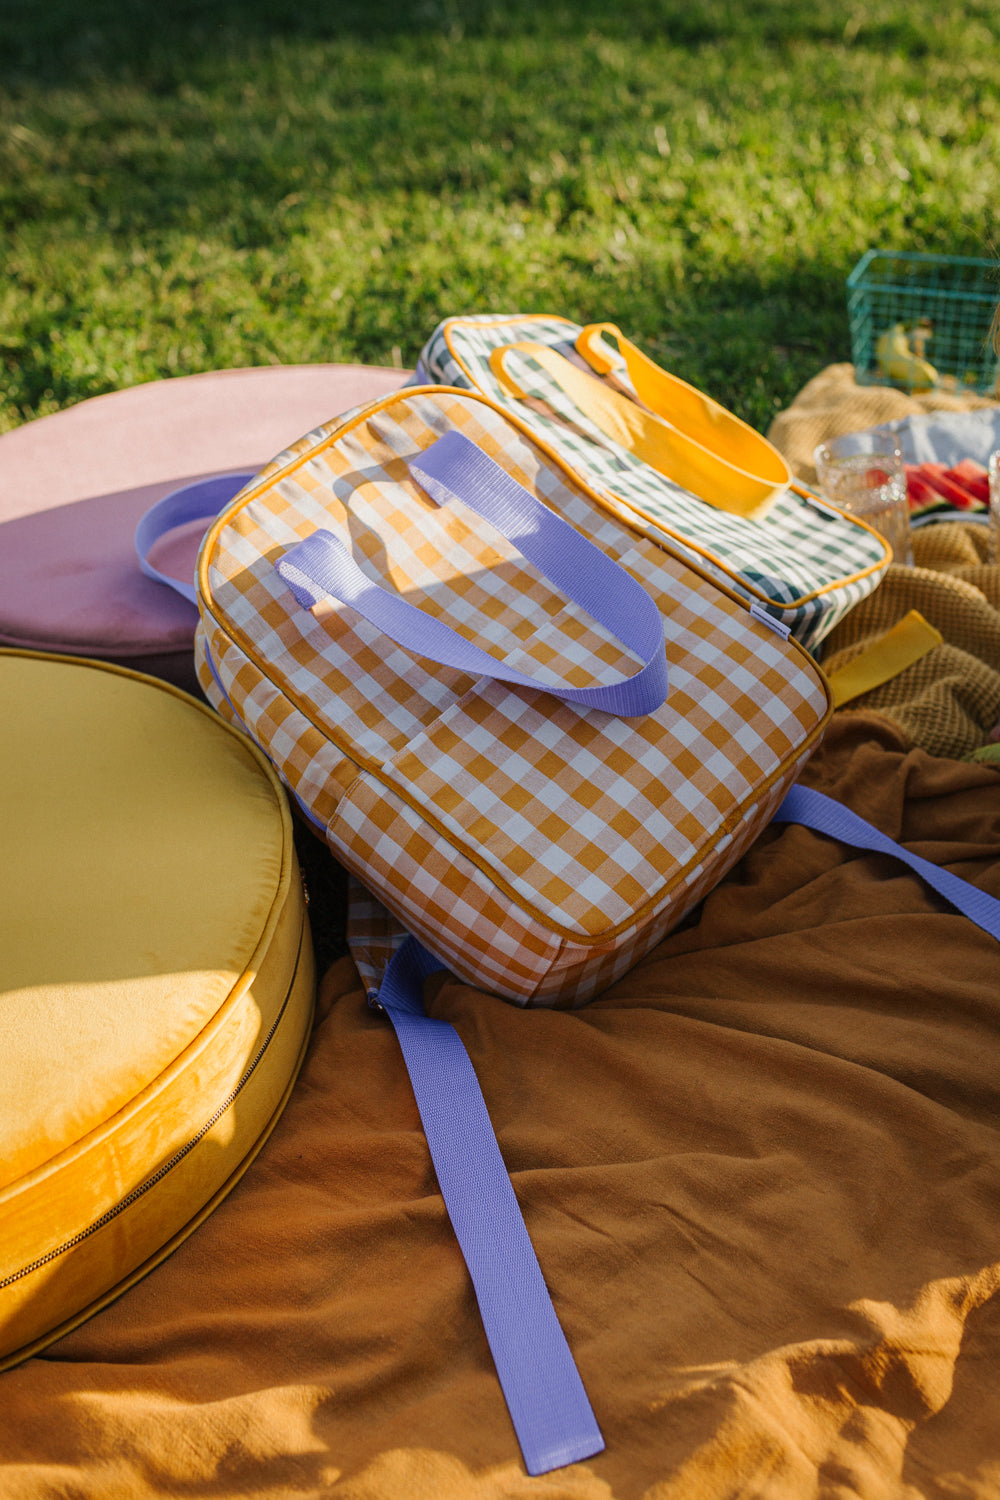 plecak w kratkę żółty i plecak zielony w kratkę od Bettys Home leżące na kocu w trakcie pikniku obok welurowej pufy żółtej 